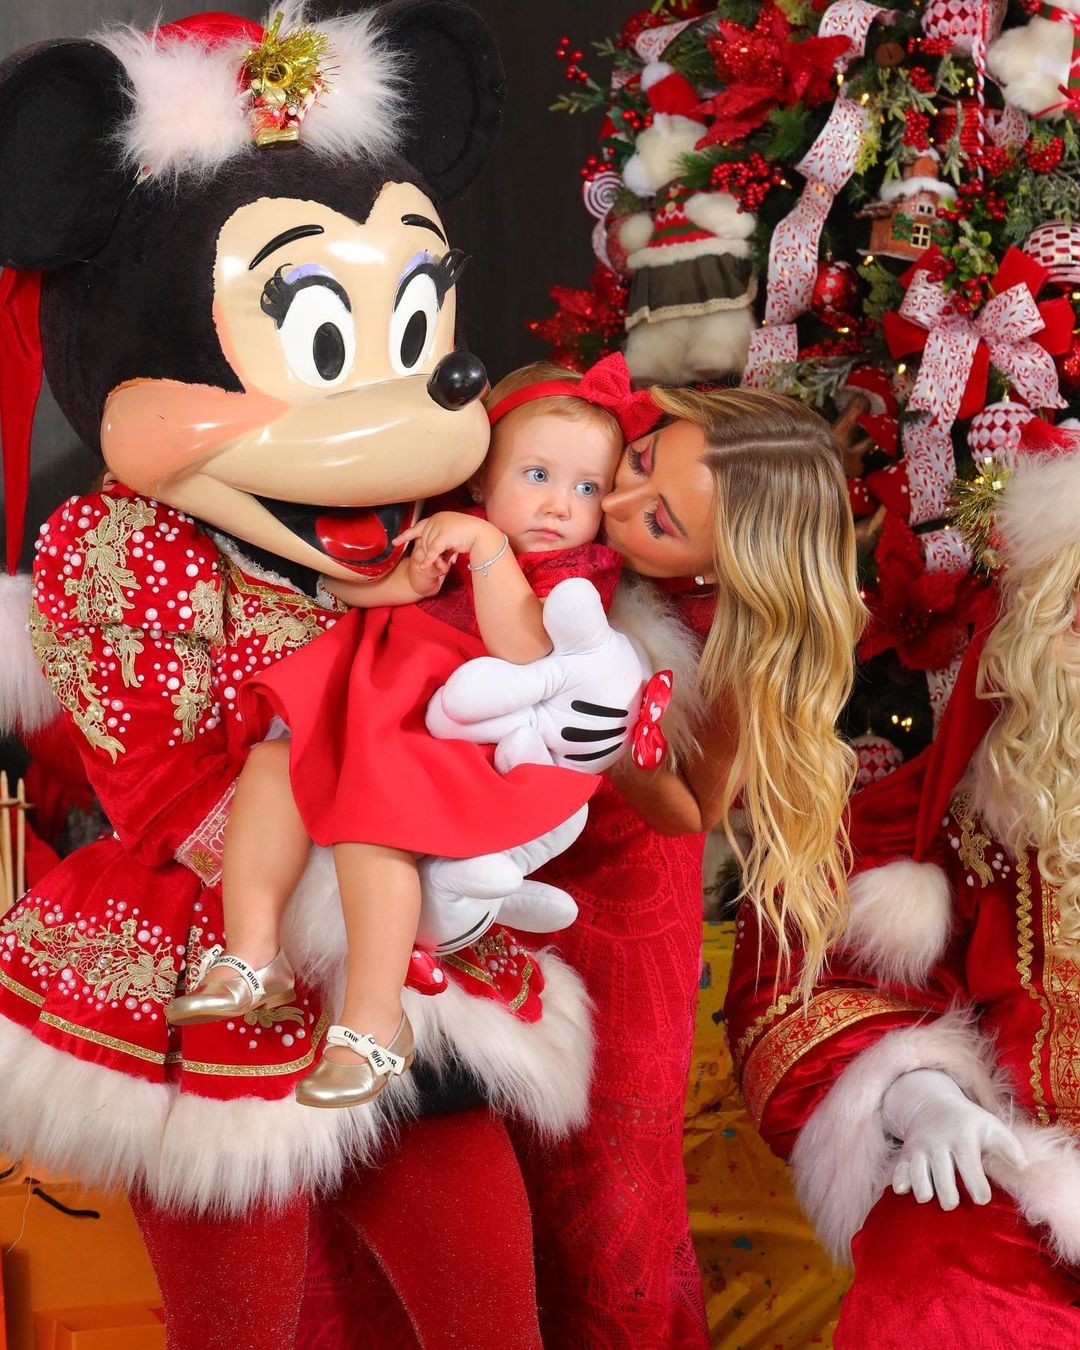 Ana Paula Siebert posa com a família em álbum natalino (Foto: Reprodução / Instagram)